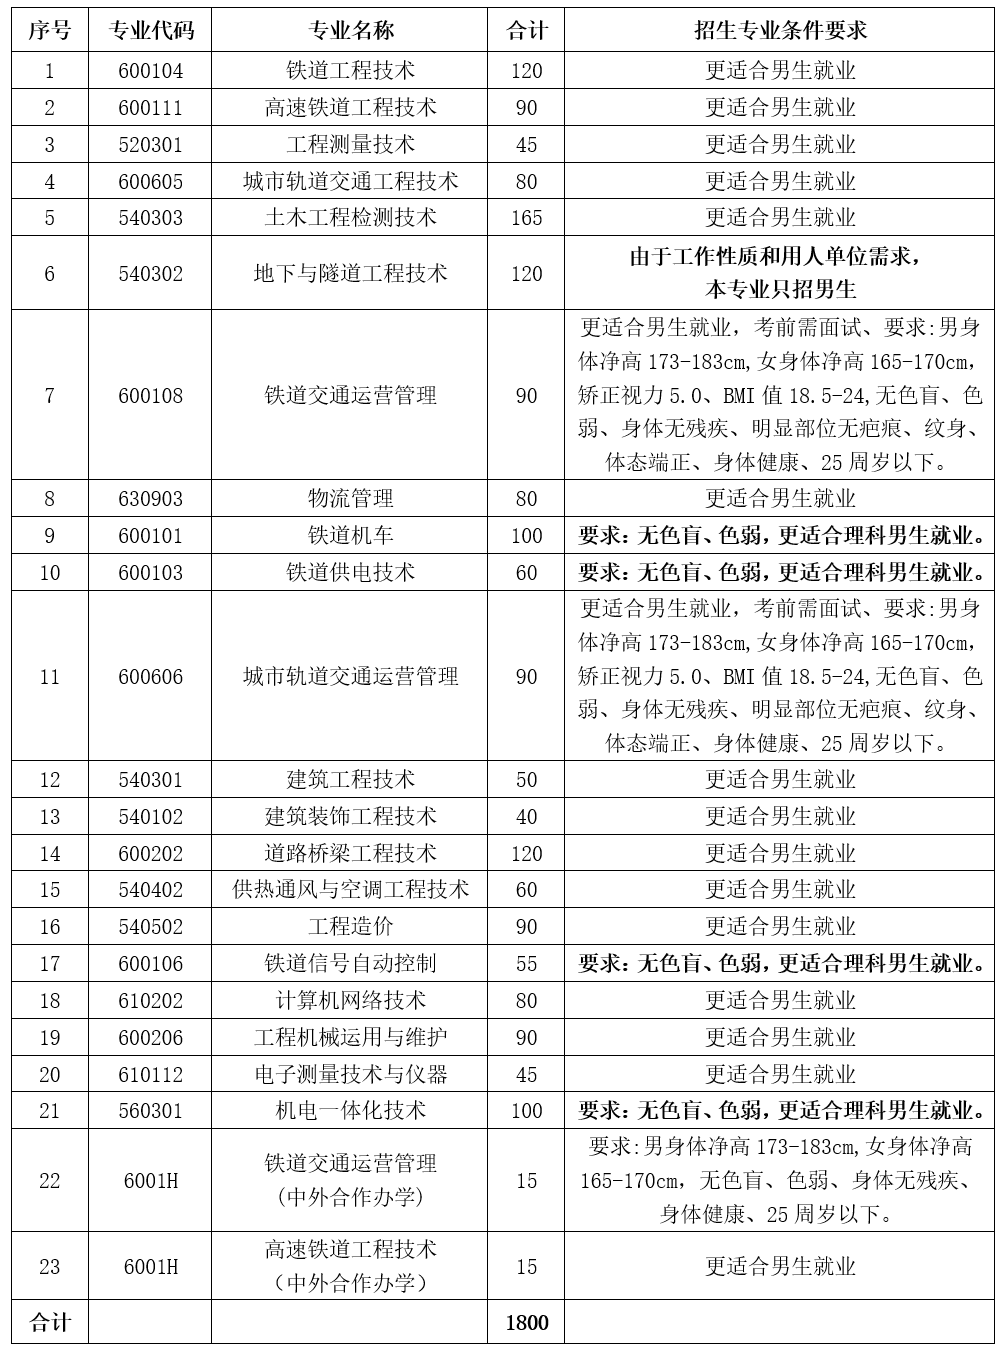 哈尔滨铁道职业技术学院2019年单独招生简章